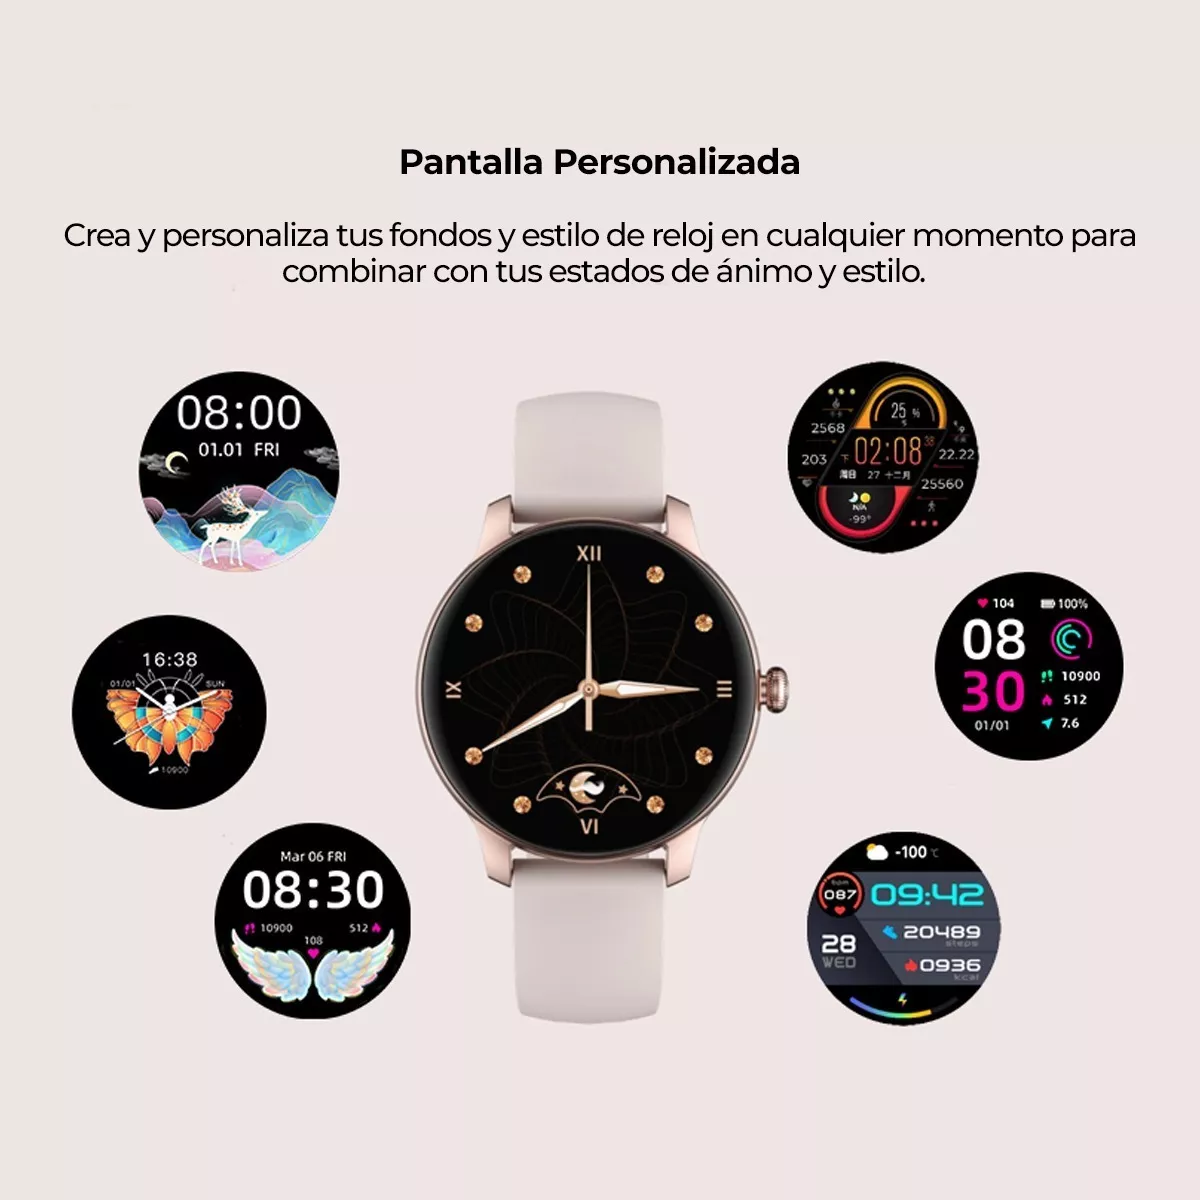 Smartwatch Xiaomi Kieslect KR – MALIKA